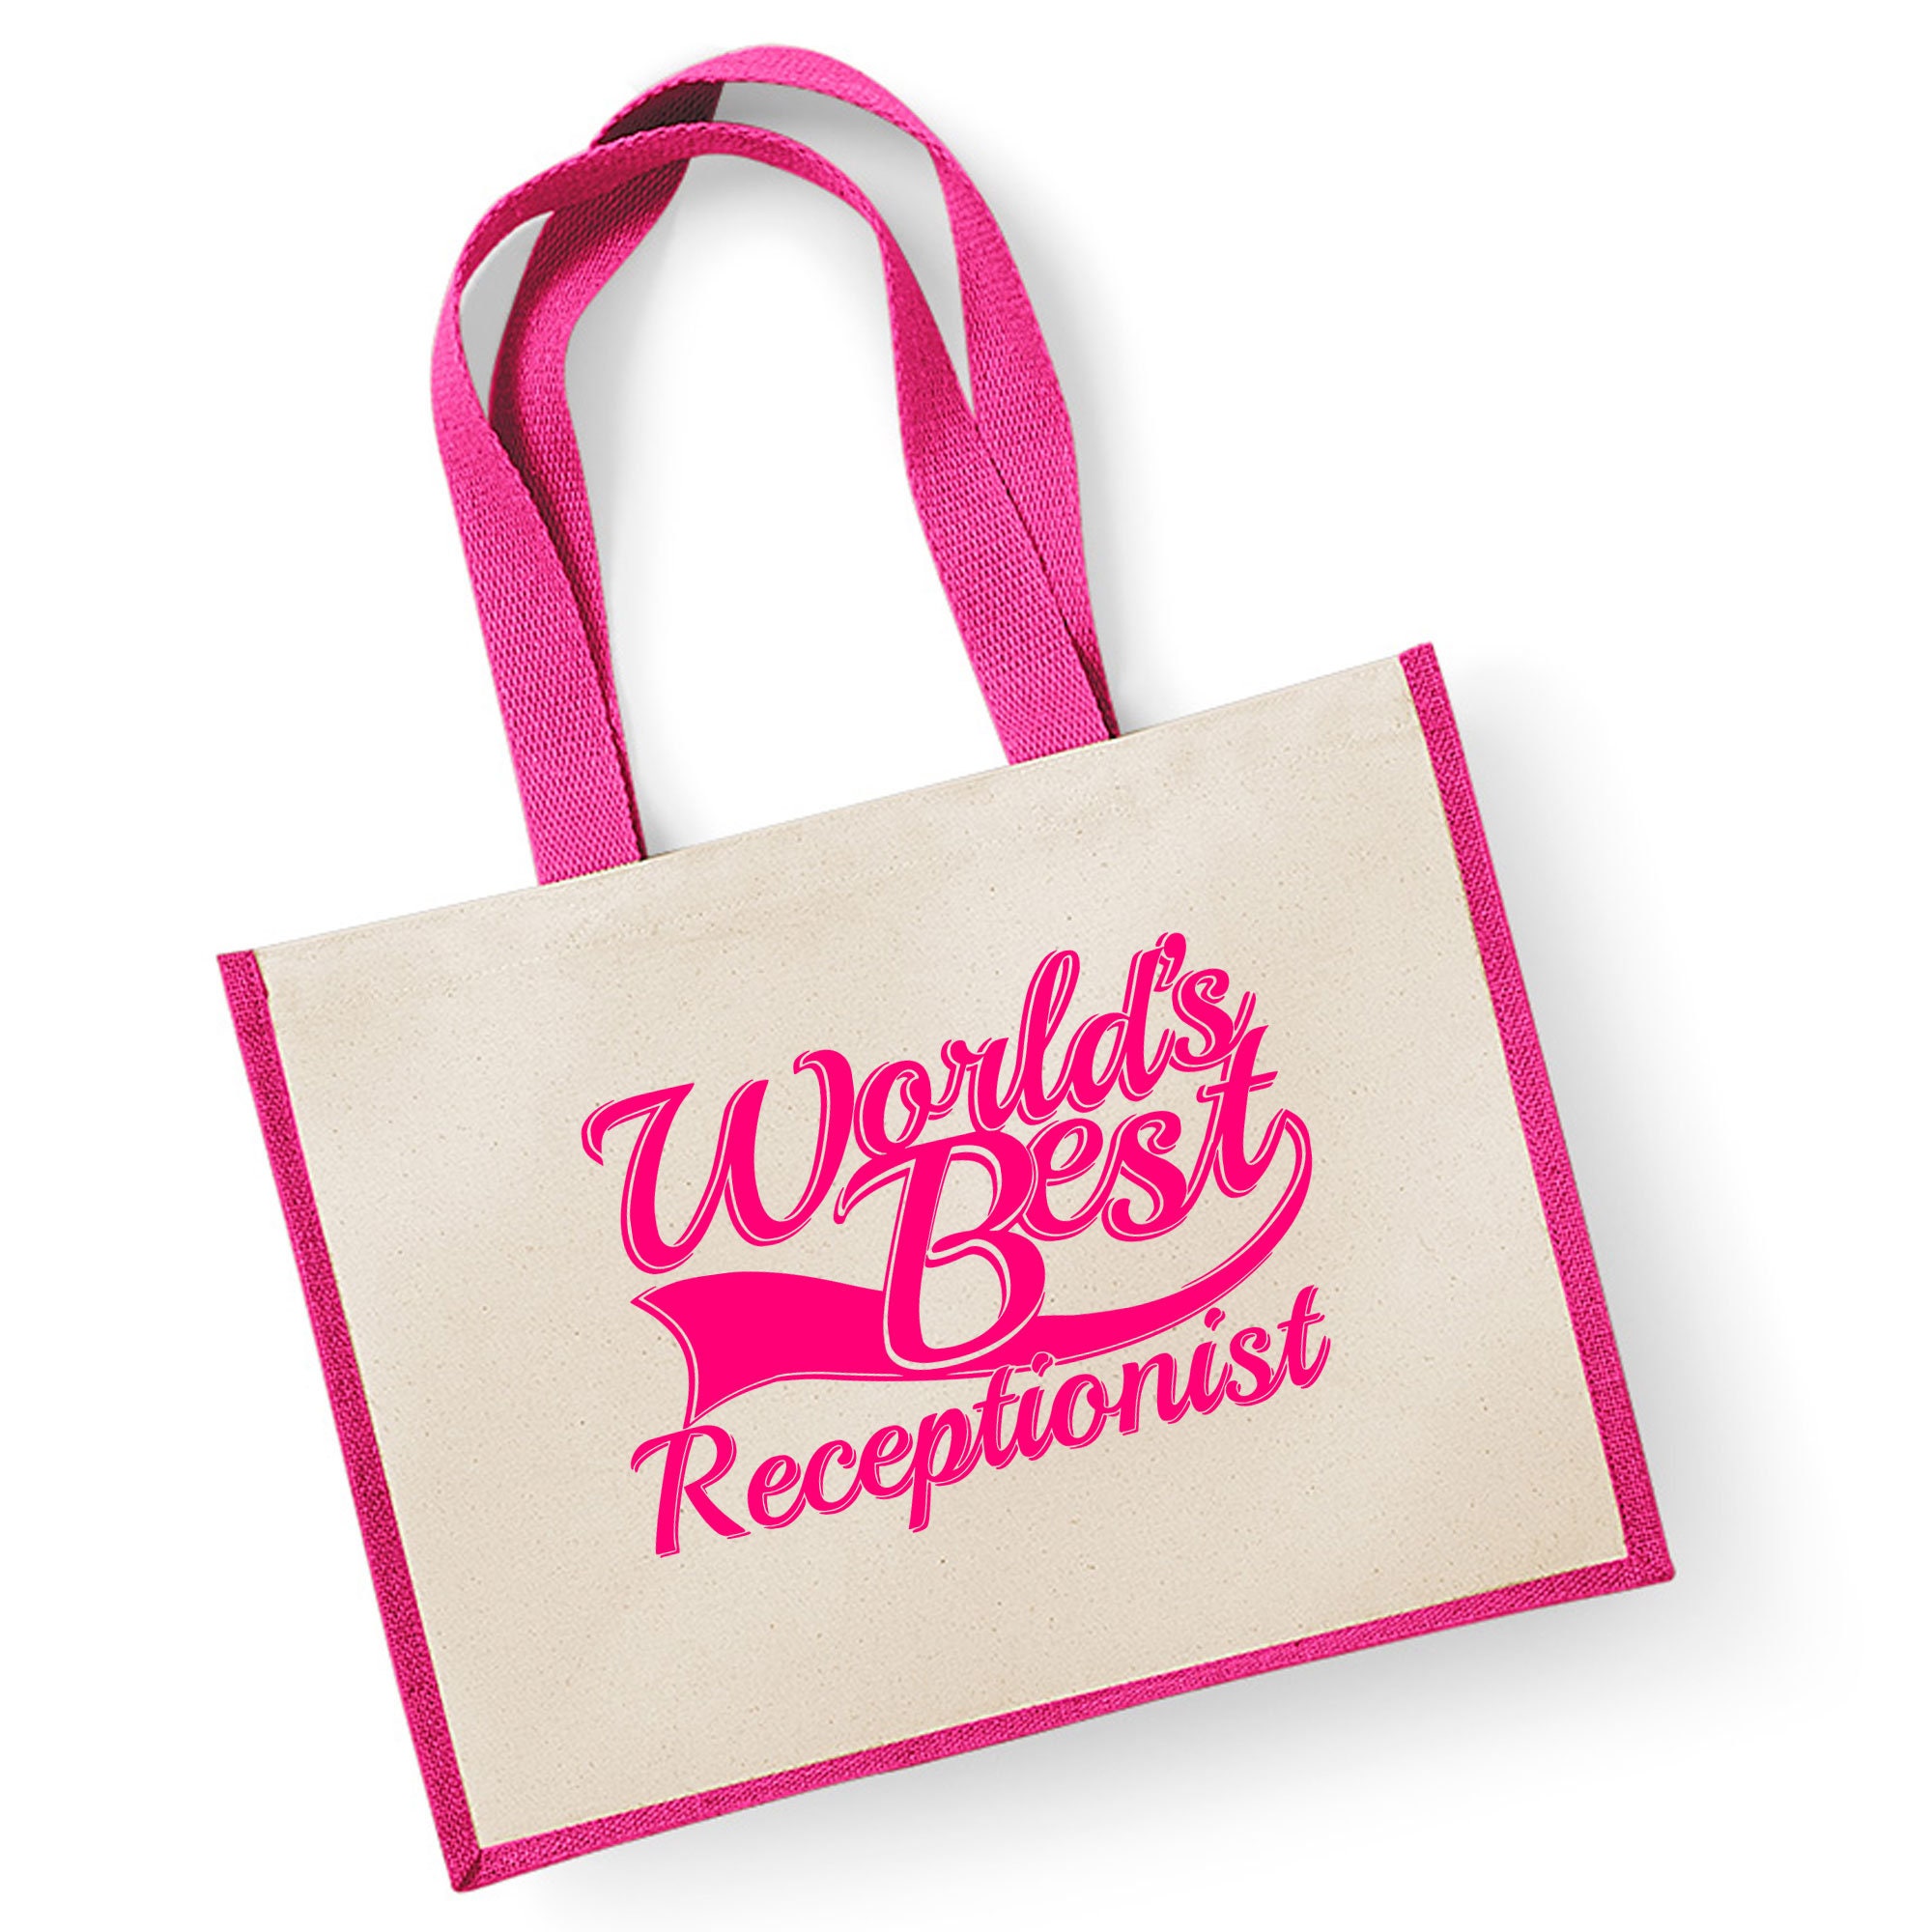 RECEPTION BAG (a) - Sangeetha Bags